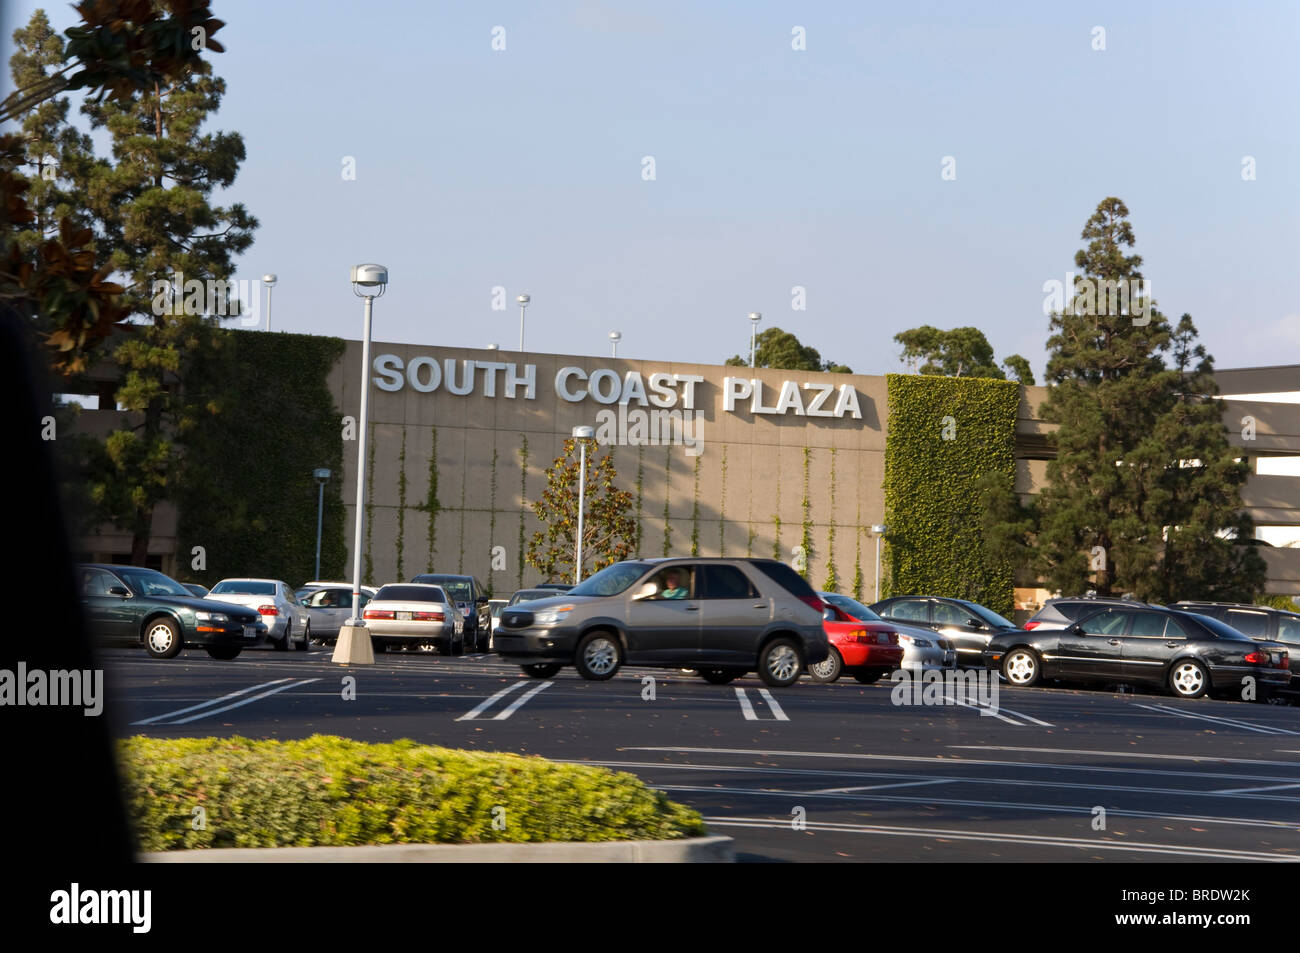 South Coast Plaza, CA